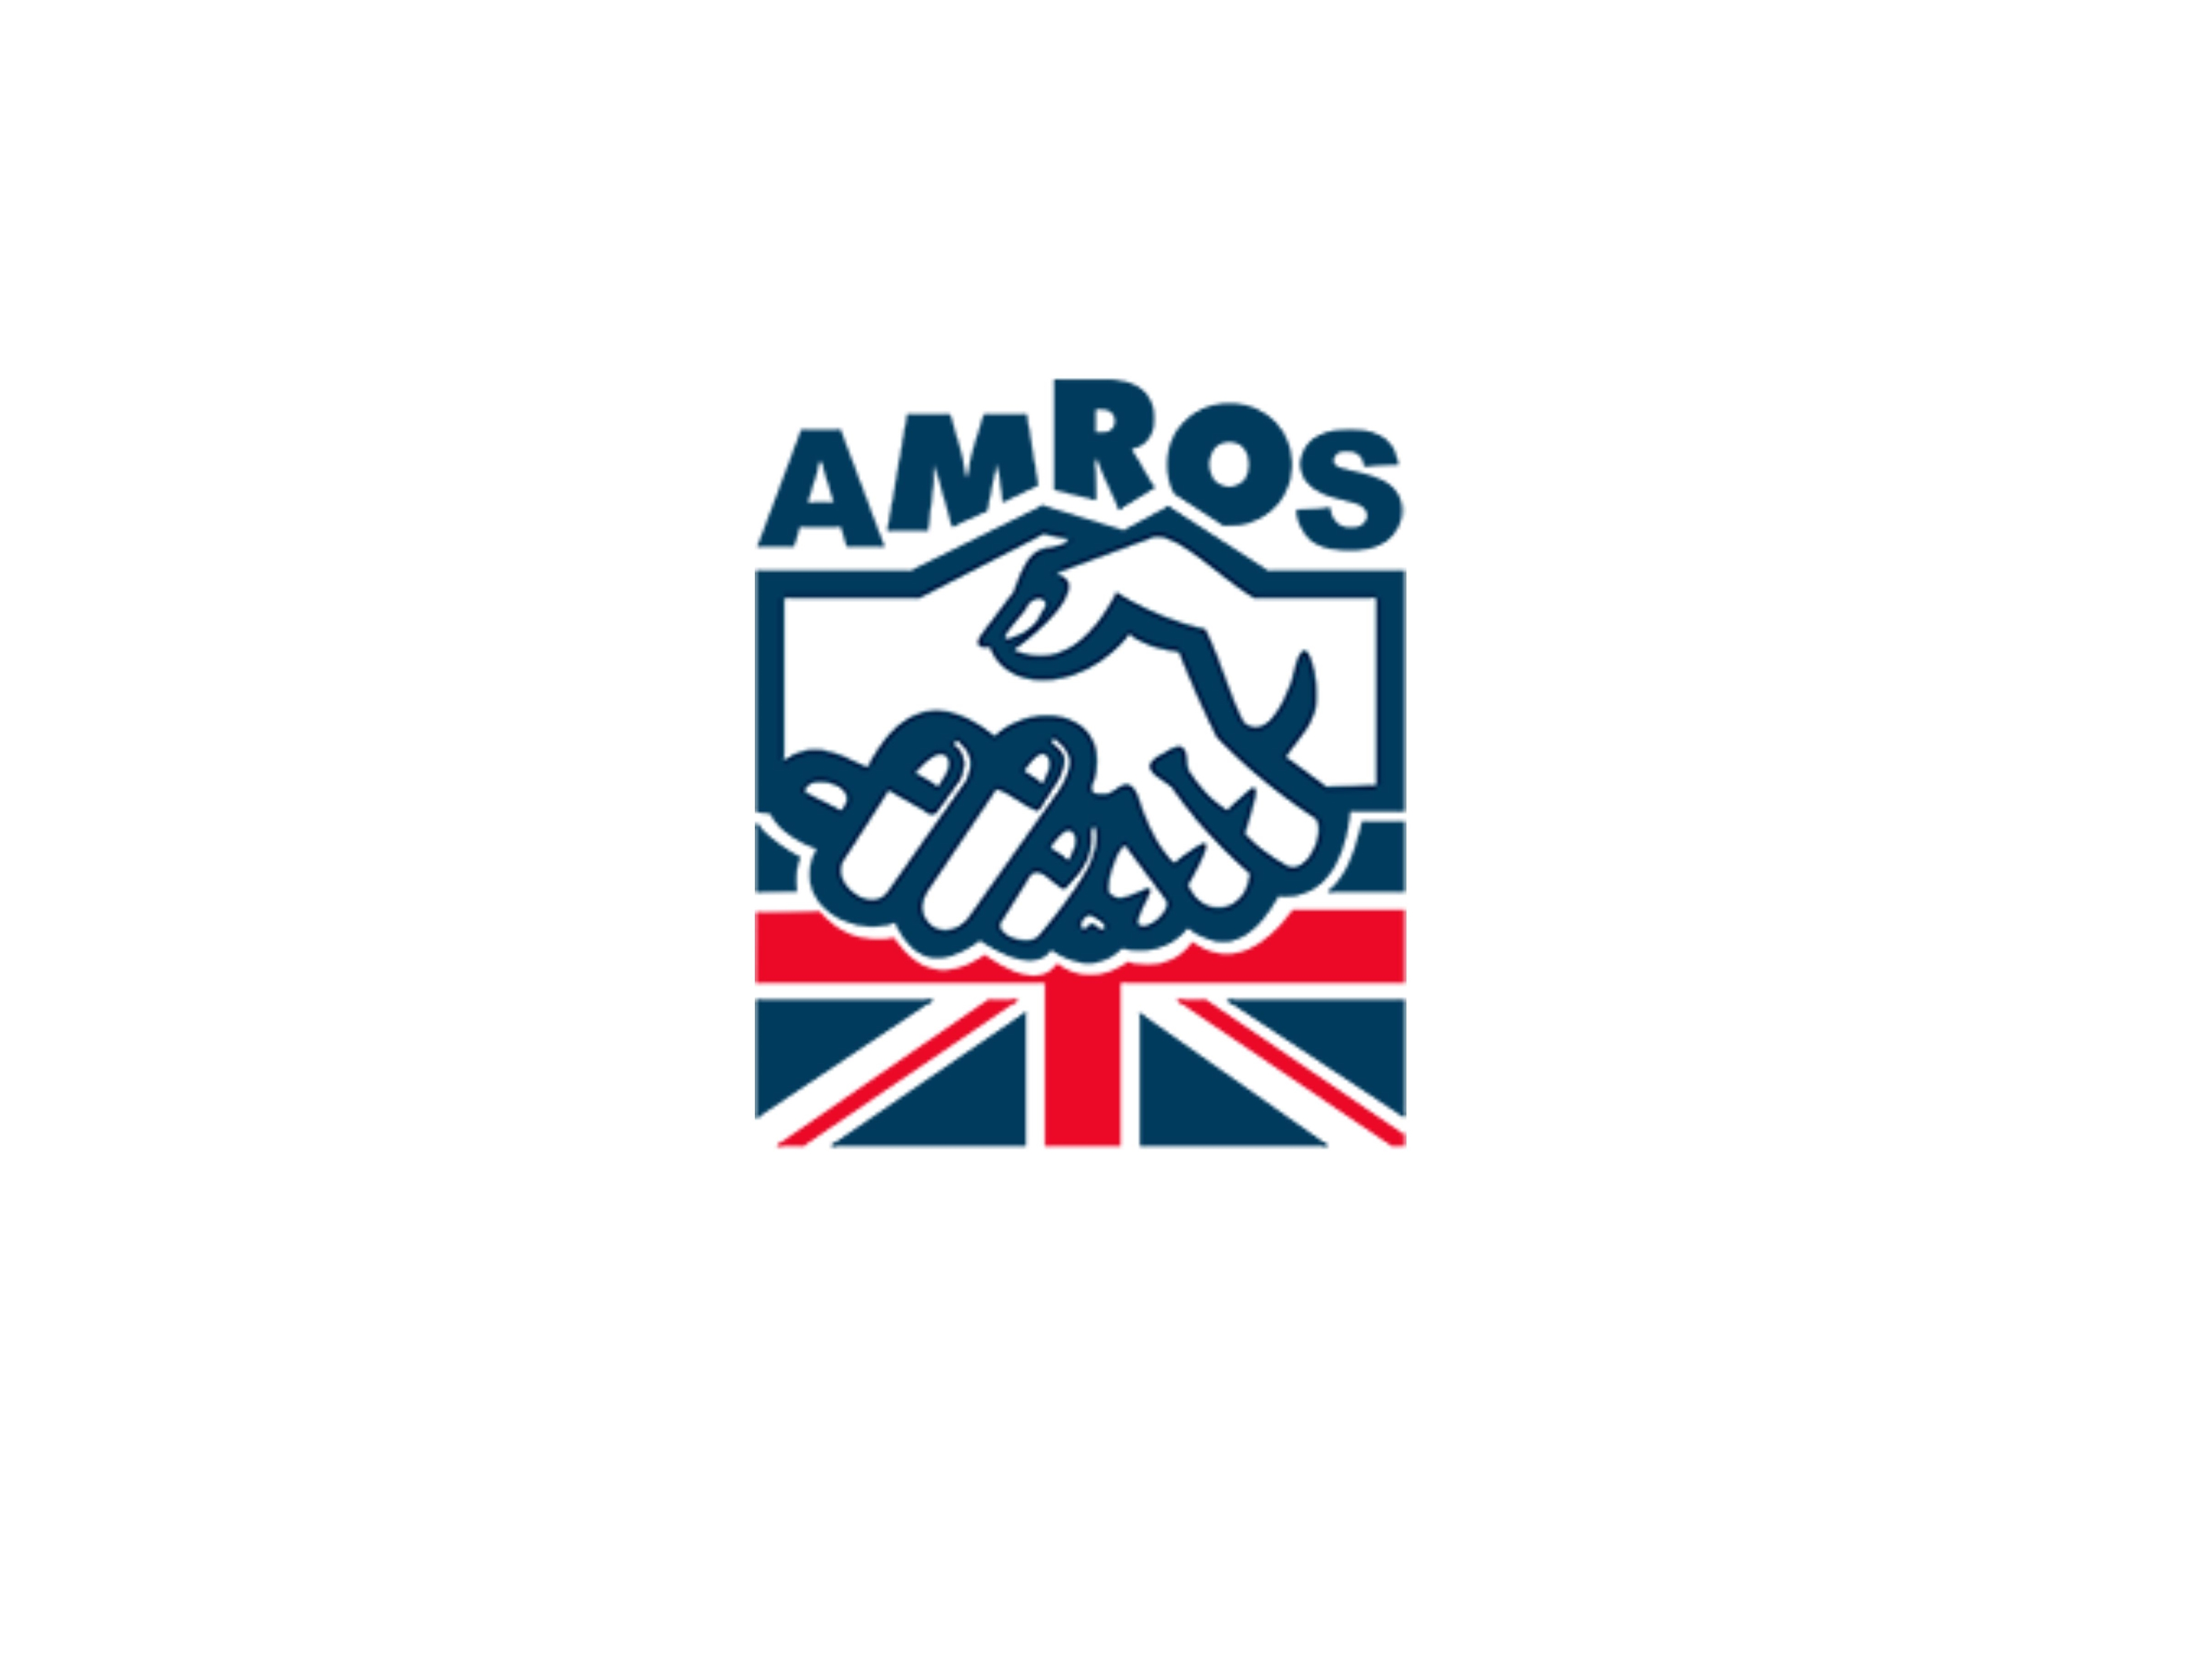 Amros logo